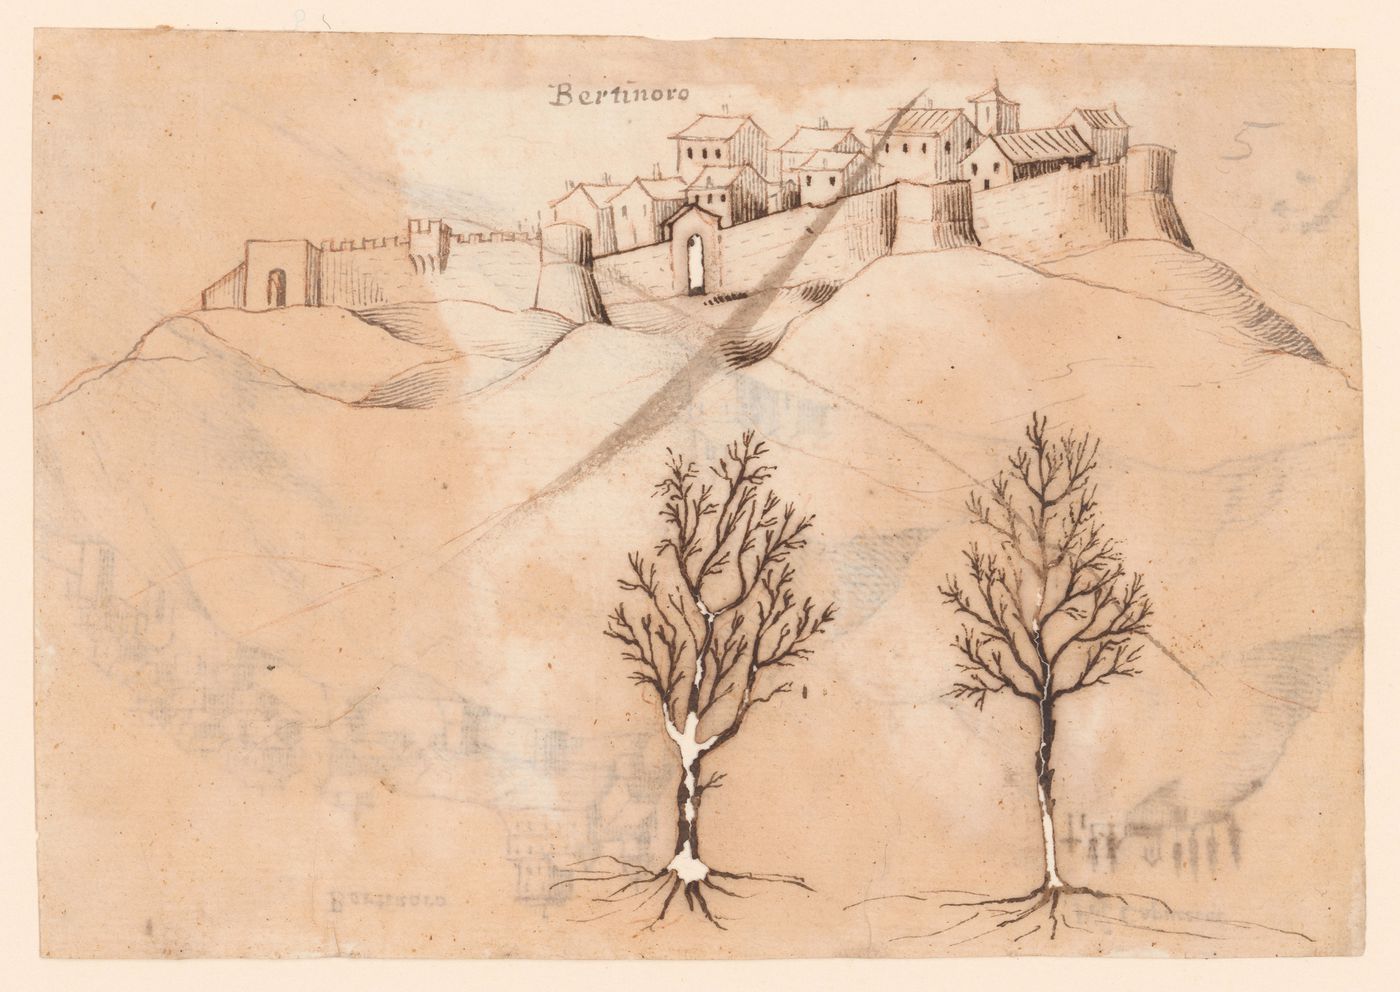 View of the Rocca Vescovile, Bertinoro, with two trees sketched below; verso: View of the Rocca Vescovile and the Prioria Capuccini, Bertinoro